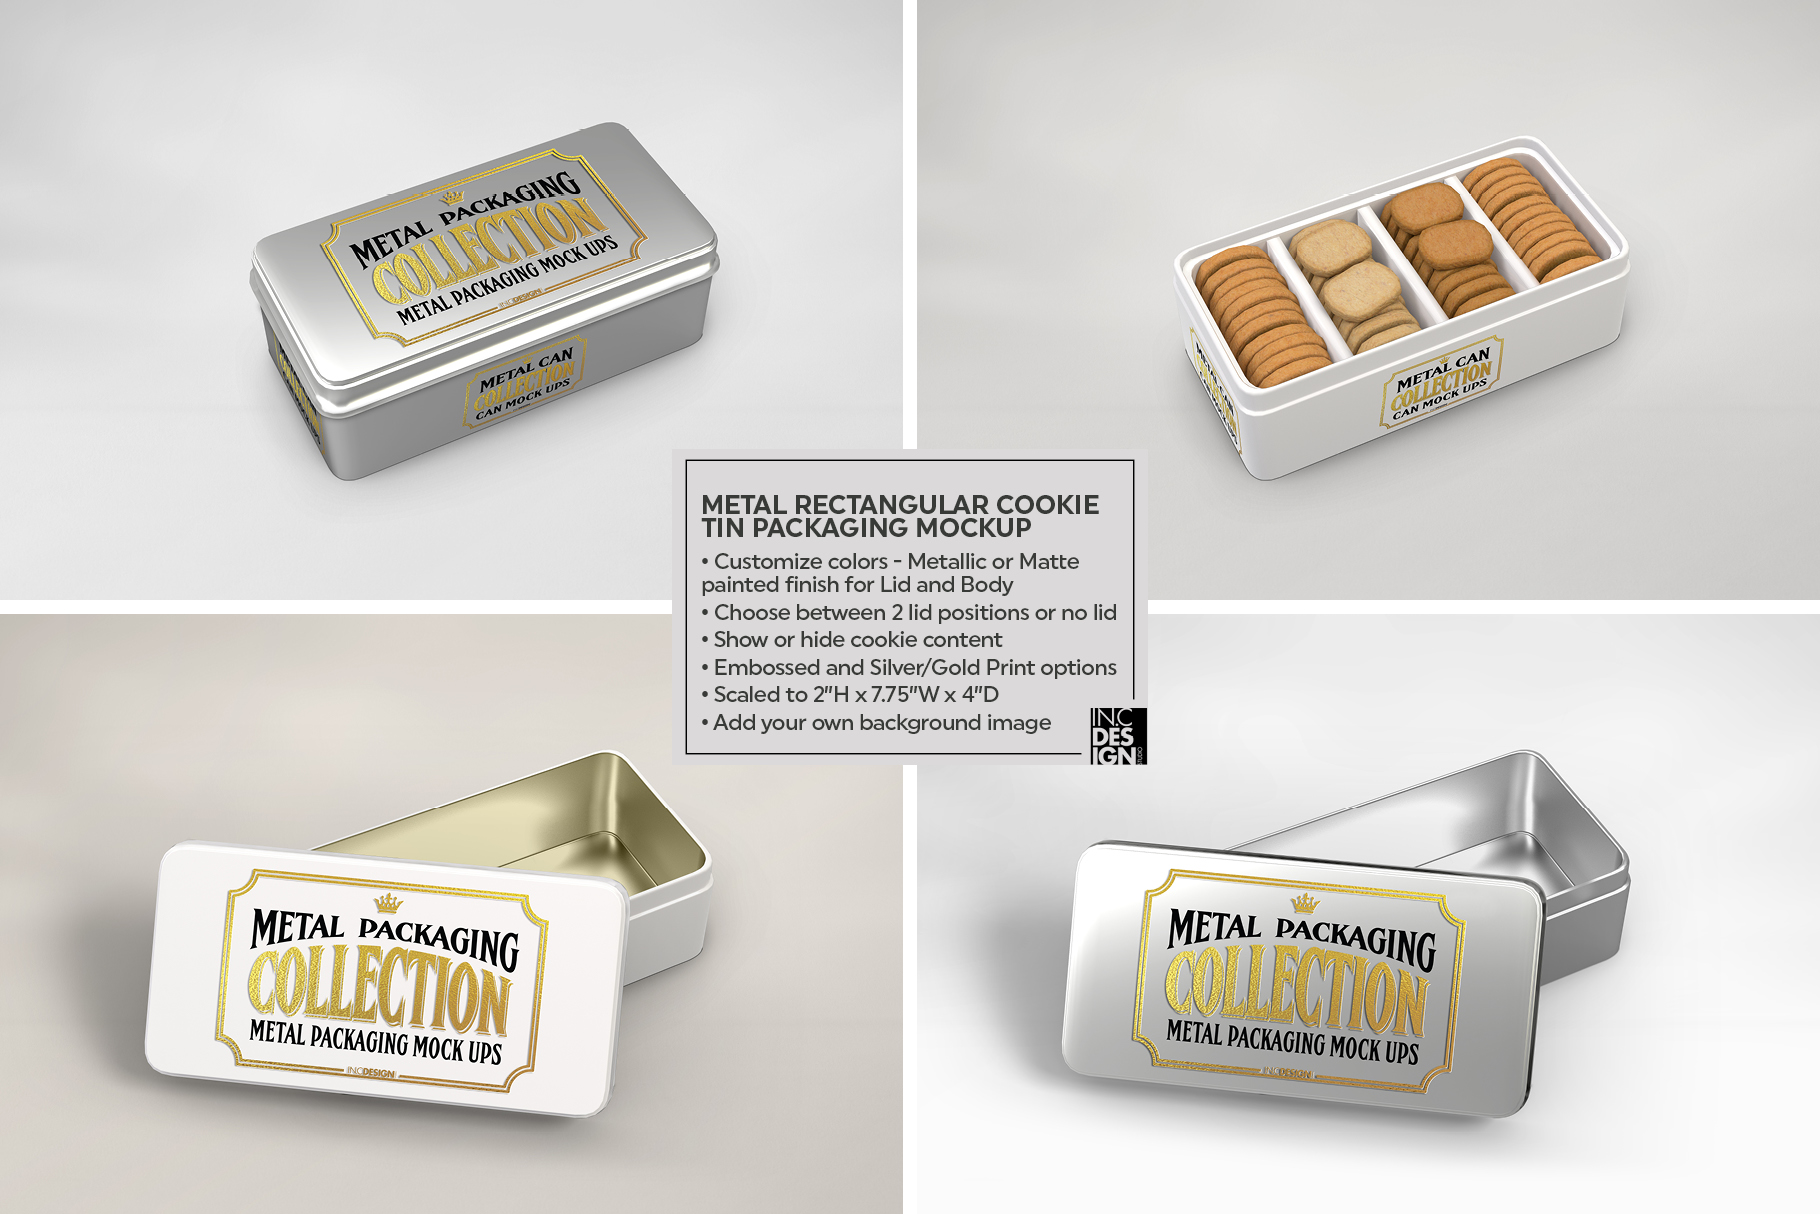 Metal Rectangular Cookie Tin Packaging Mockup (277189 ...